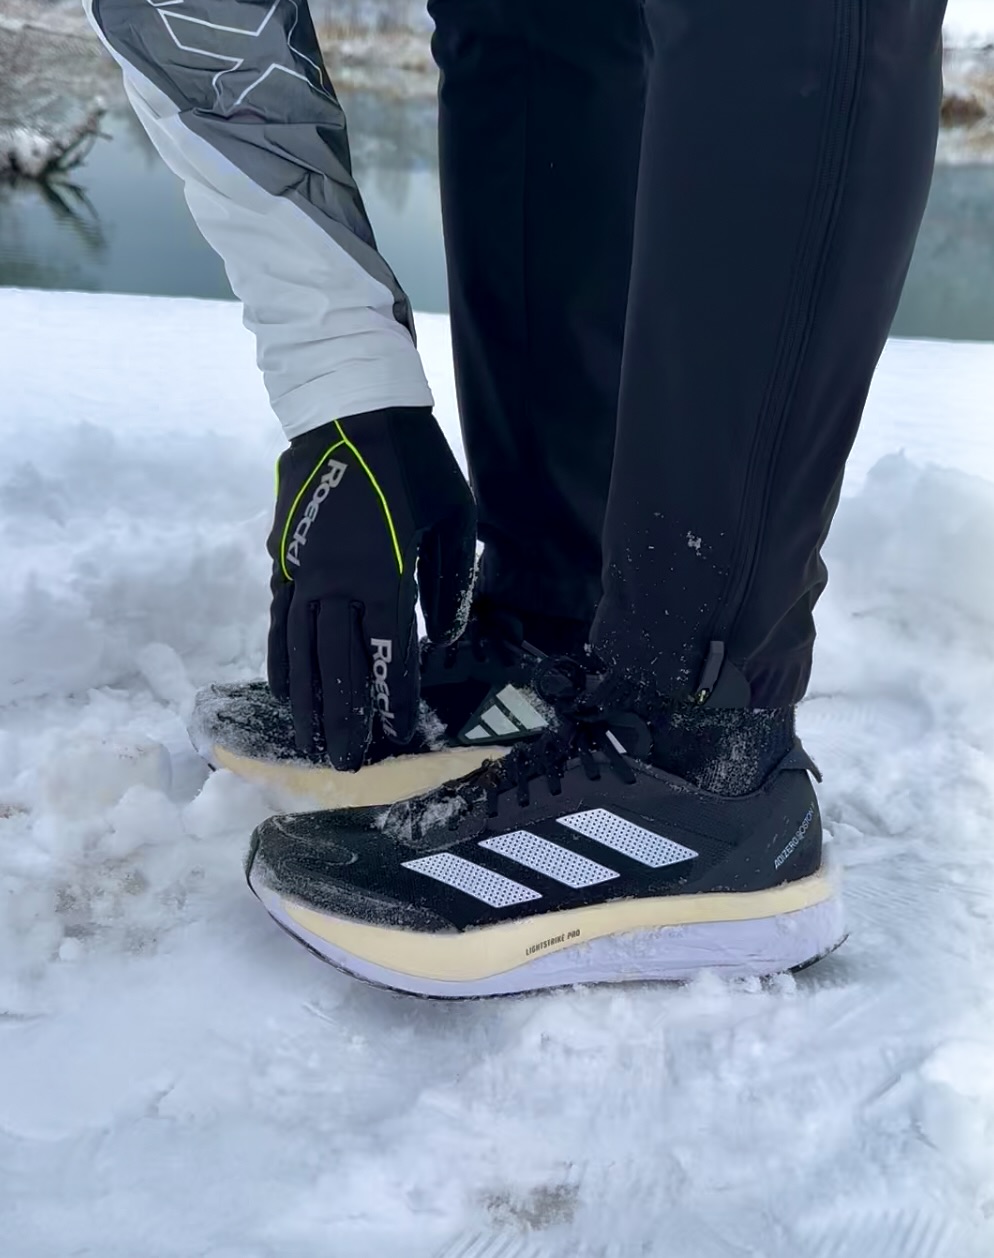 Laufschuhe und Laufhandschuhe für den Winter in der Nahaufnahme